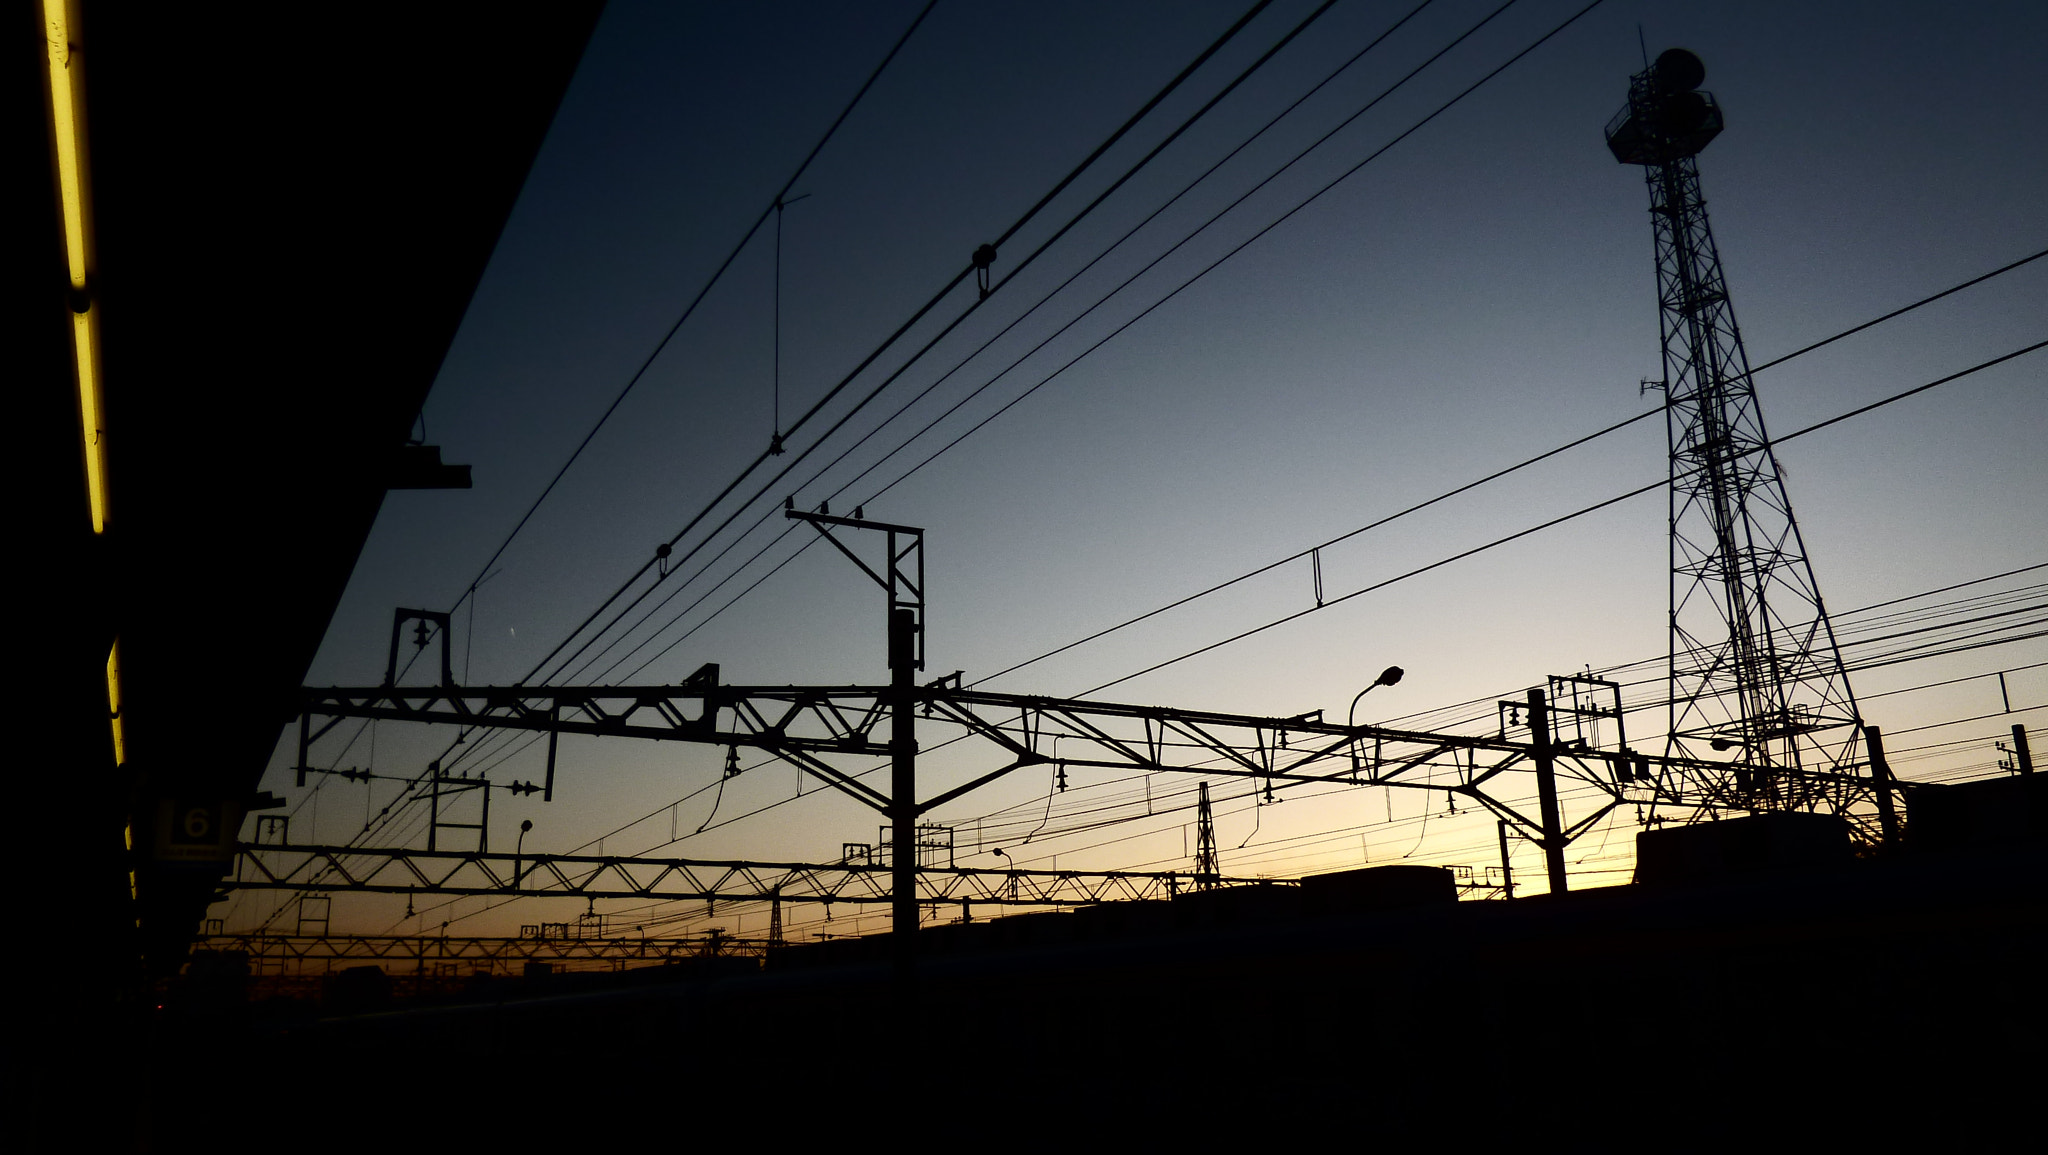 Panasonic DMC-FX77 sample photo. The sunset at wakayamashi station photography